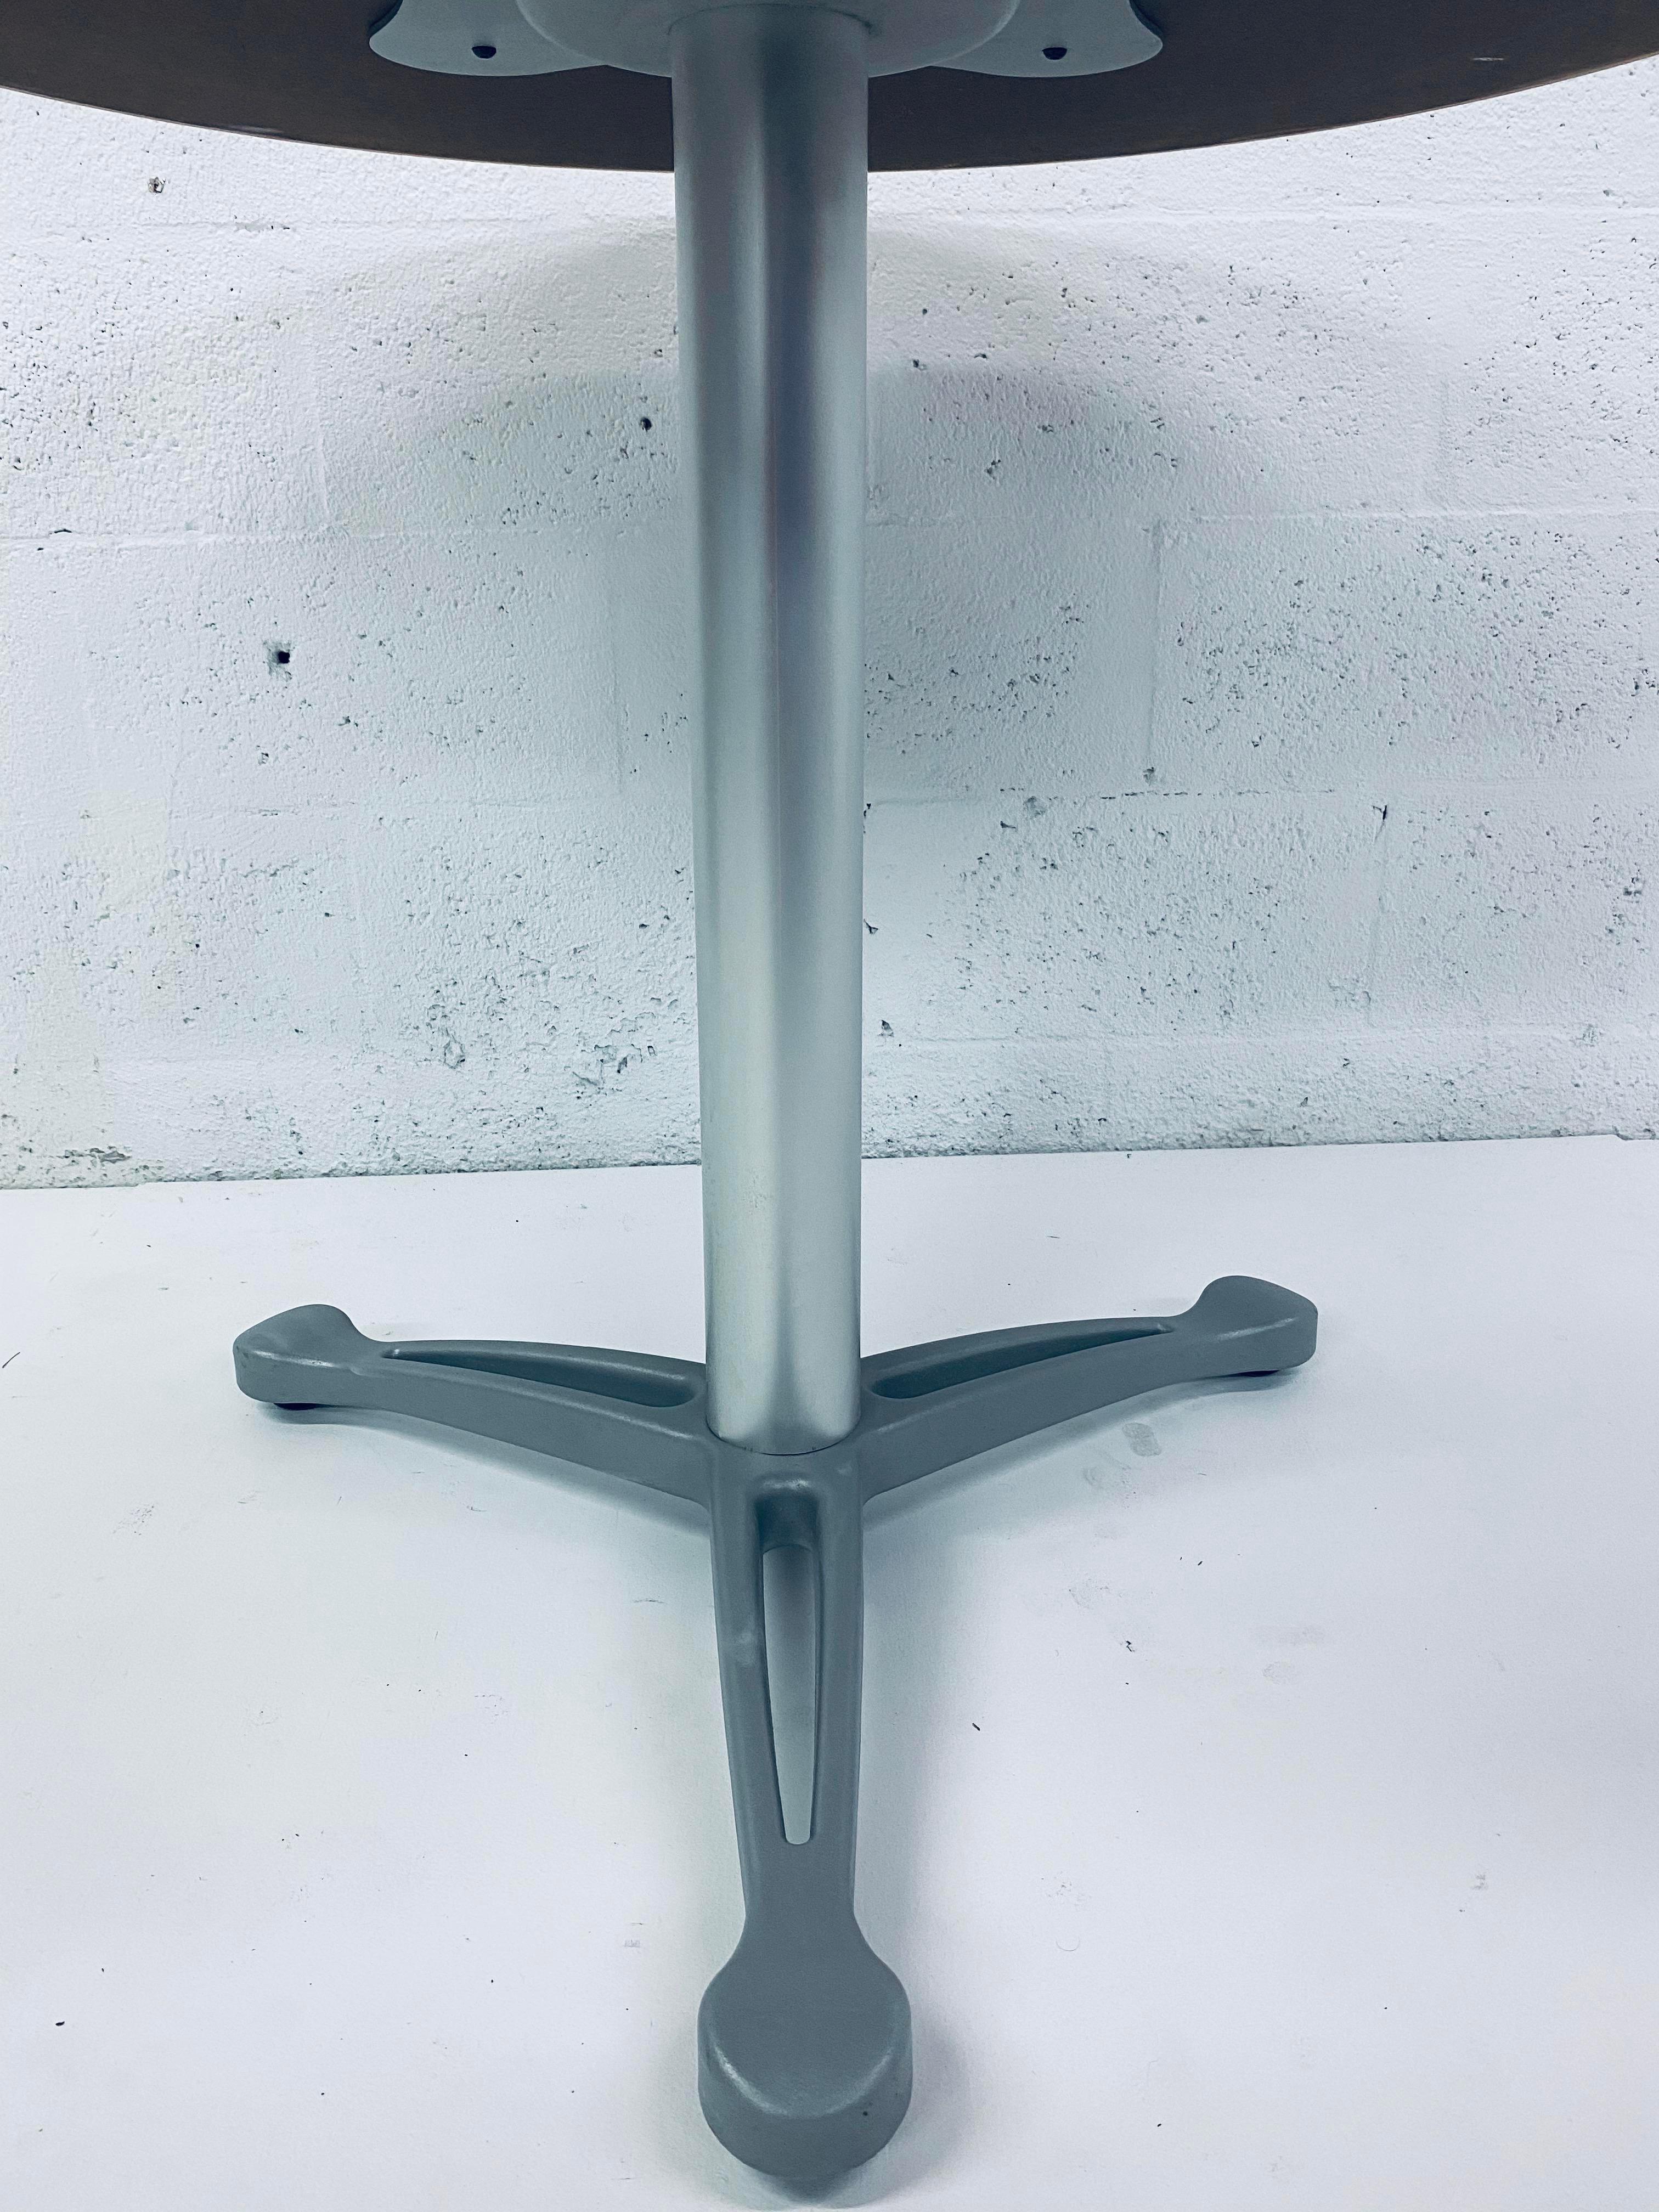 Aluminum Emanuela Frattini “Propeller” Table for Knoll For Sale